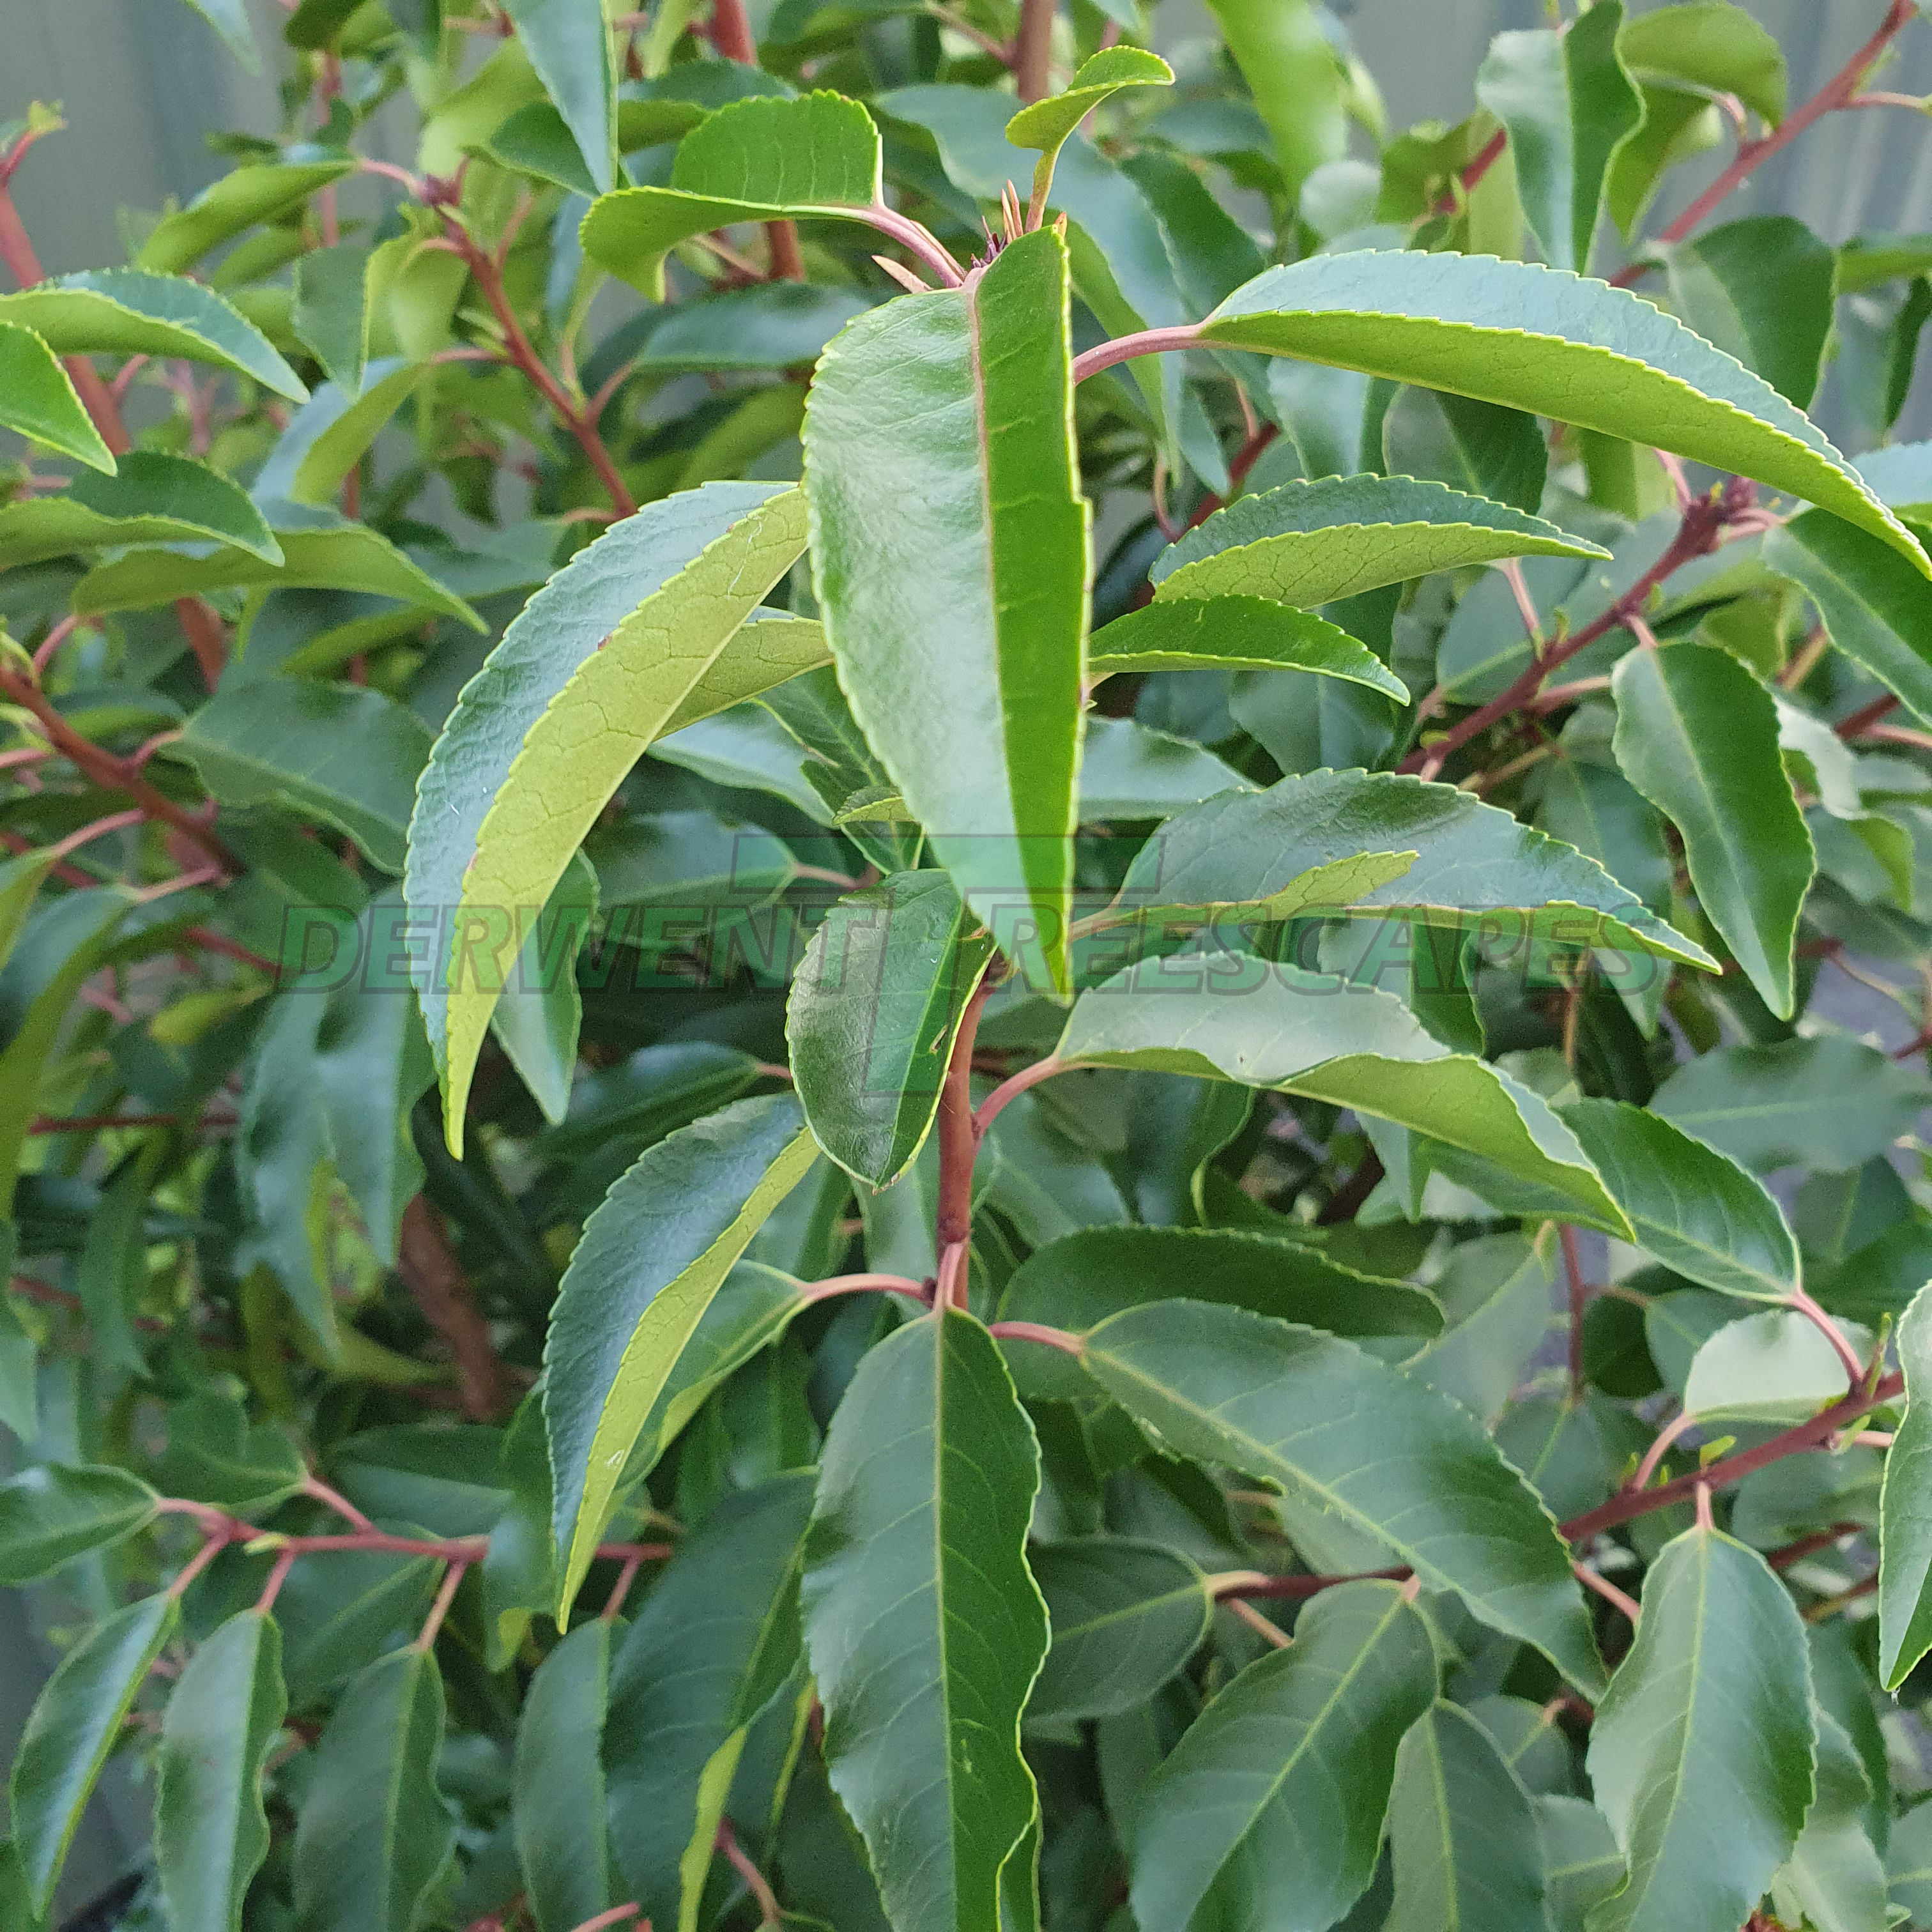 Prunus lusitanica angustifolia - Portuguese Laurel - 50L